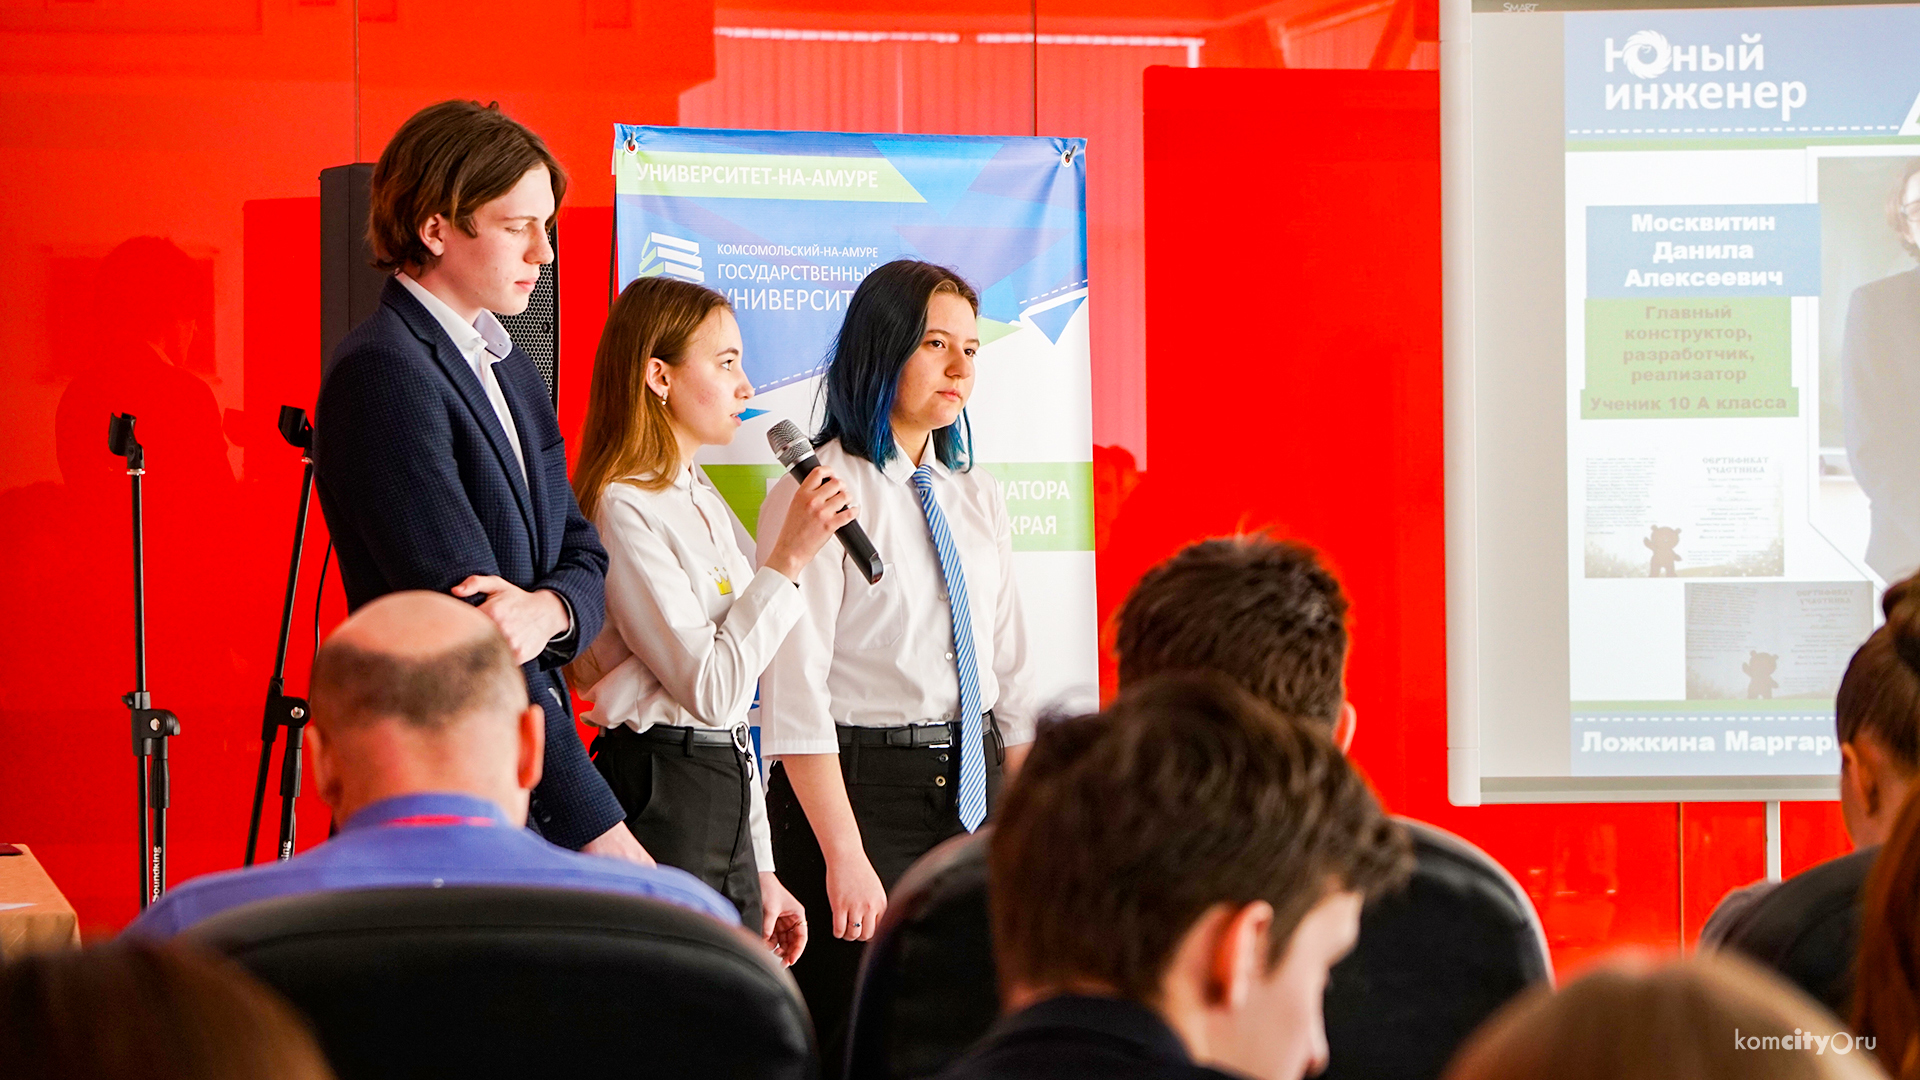 Команды учебных заведений Комсомольска-на-Амуре вышли в финал краевого конкурса научно-технических проектов «Юный инженер»